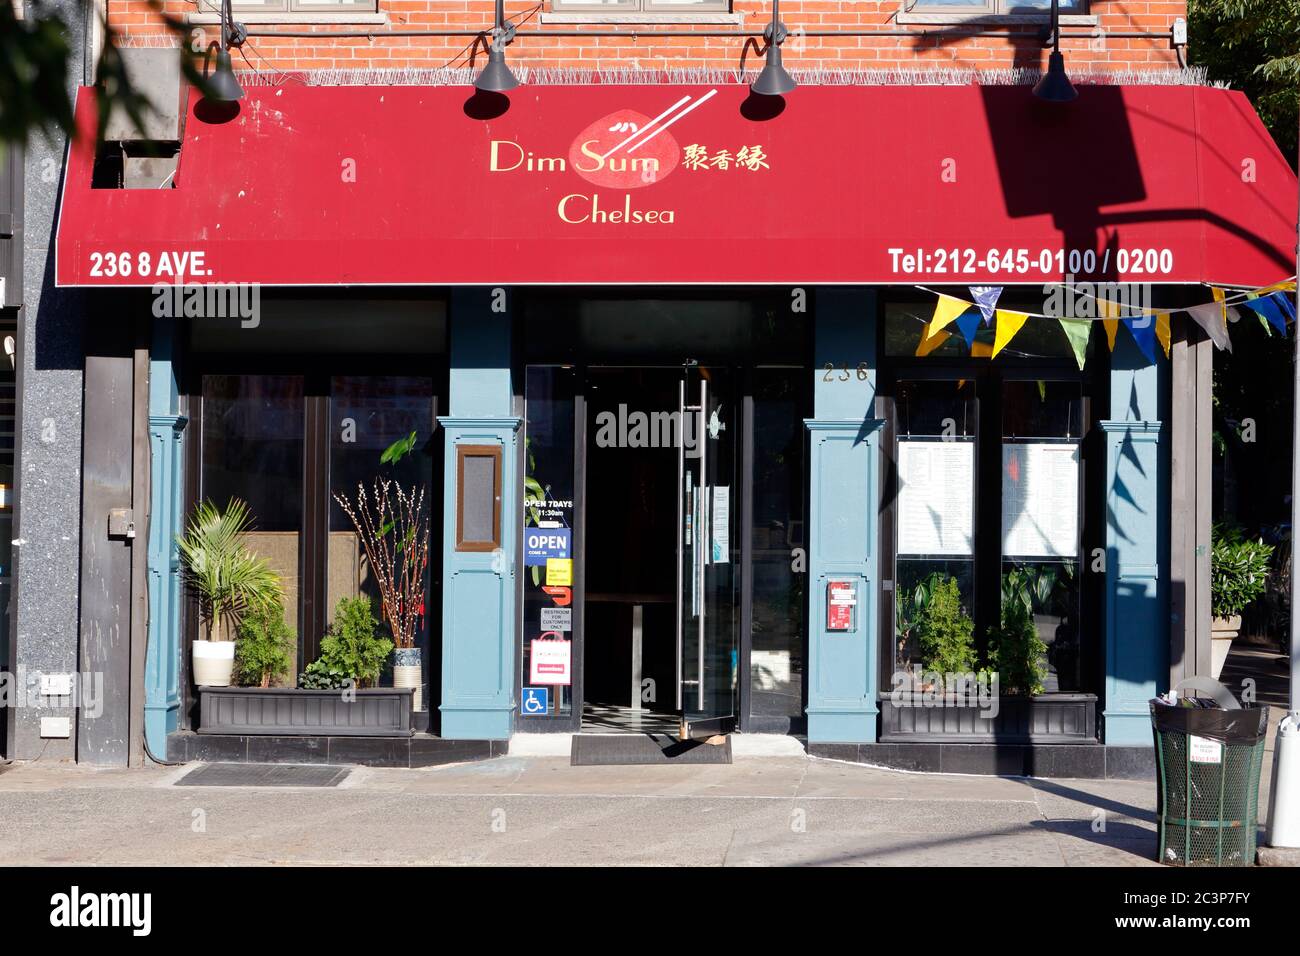 Dim Sum Chelsea, 236 8th Ave, New York, foto di un ristorante cinese nel quartiere Chelsea di Manhattan. Foto Stock